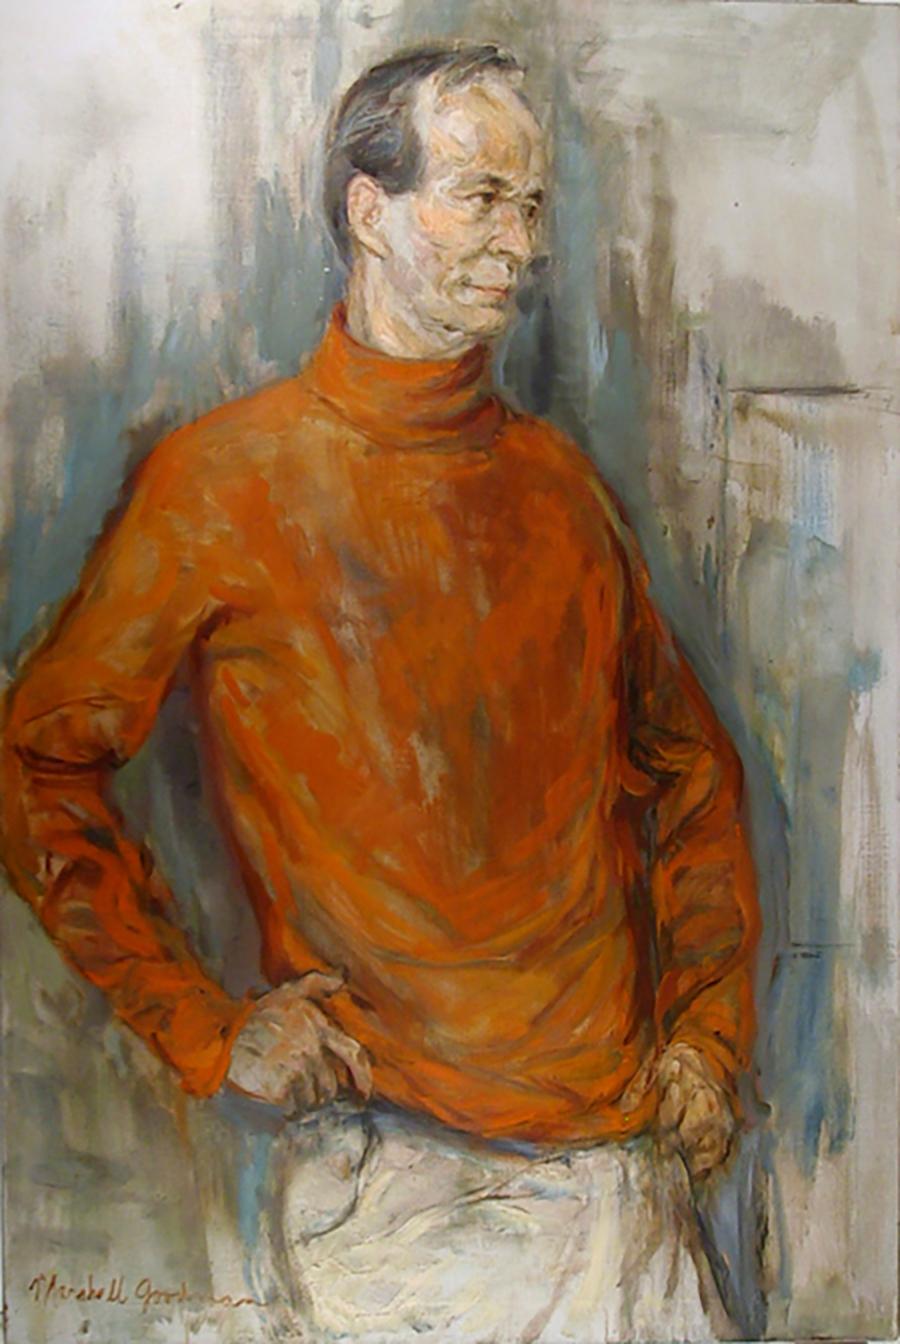 Künstler: Marshall Goodman, Amerikaner (1916 - 2003)
Titel: Selbstporträt
Jahr: um 1960
Medium: Öl auf Leinwand, signiert v.l.n.r.
Abmessungen: 48  x 30 in. (121.92  x 76,2 cm)